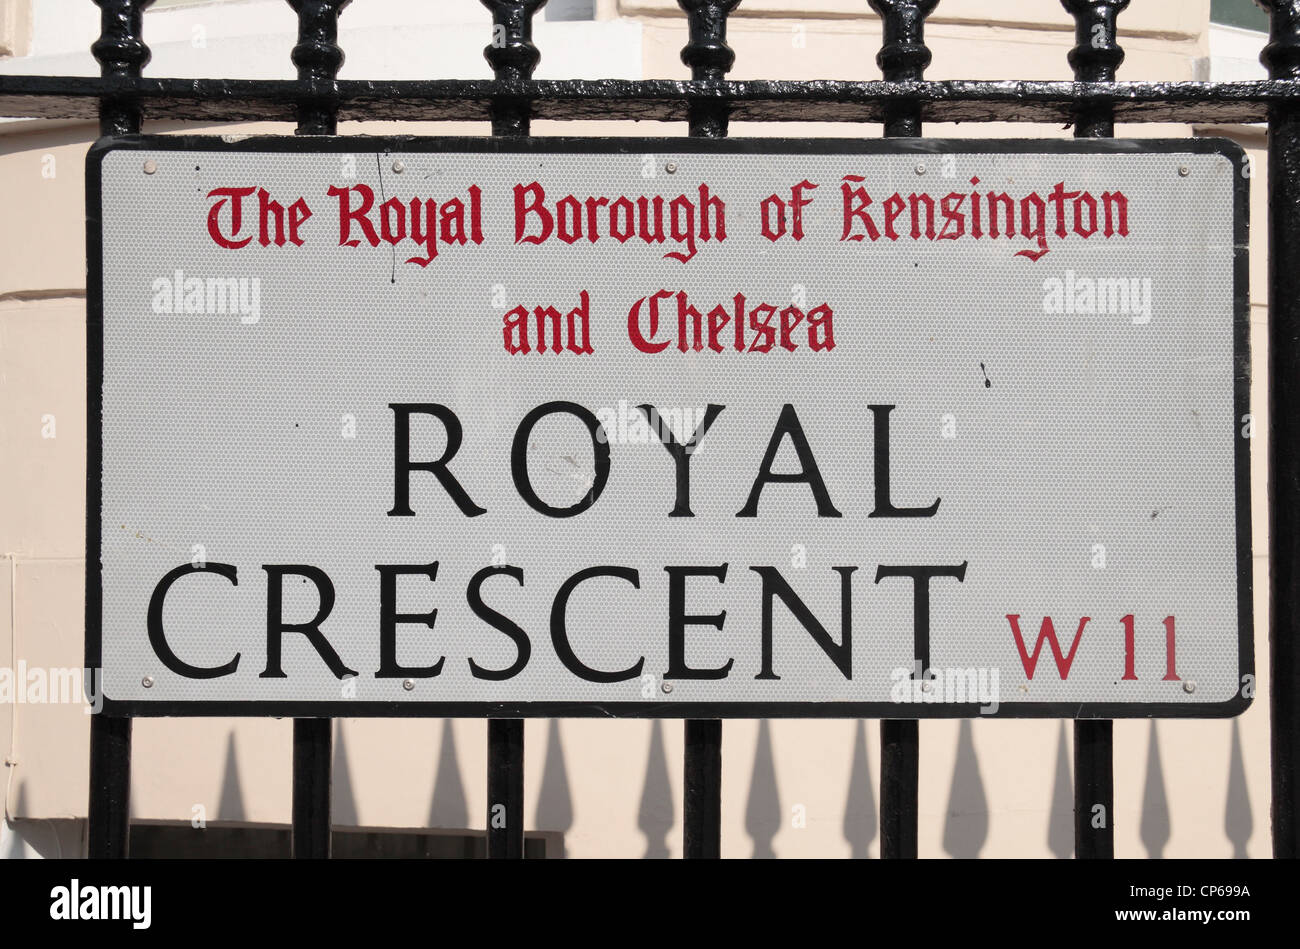 Plaque de rue pour Royal Crescent W11 dans le Royal Borough de Kensington et Chelsea, London, UK. Mars 2012 Banque D'Images